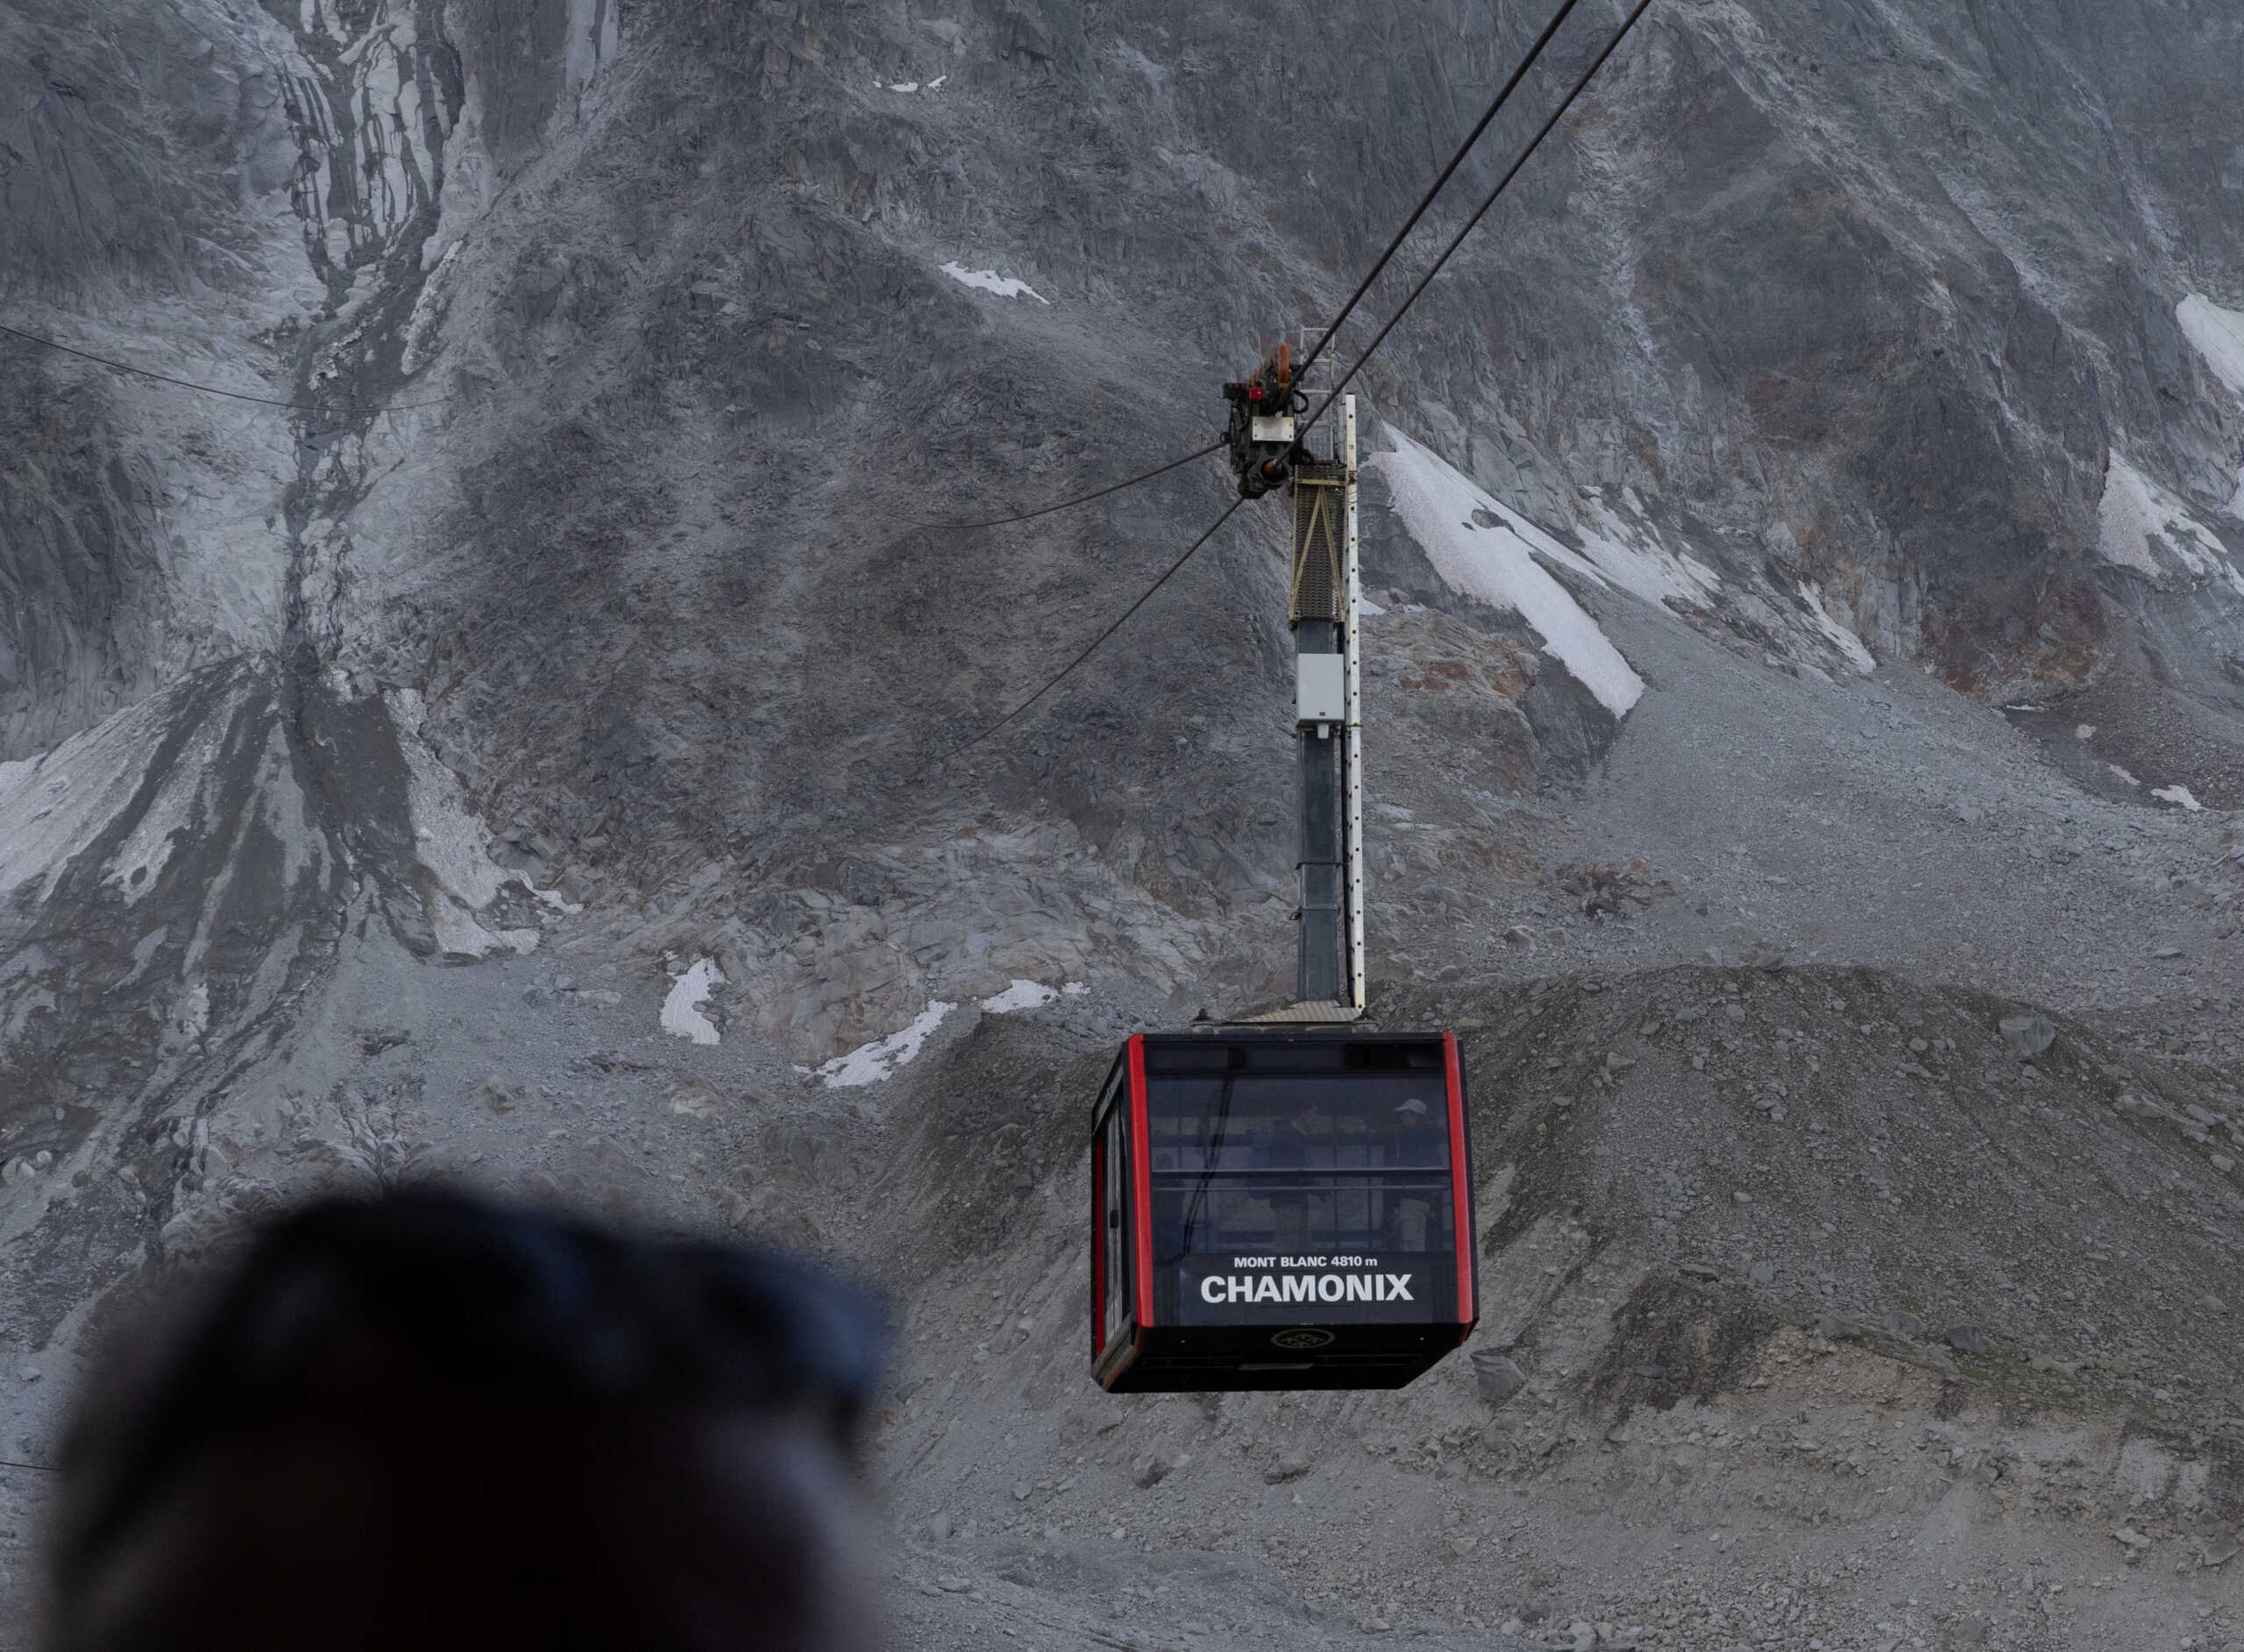 Λευκό Όρος: Η ψηλότερη κορυφή των Άλπεων κόντυνε περισσότερο από 2 μέτρα